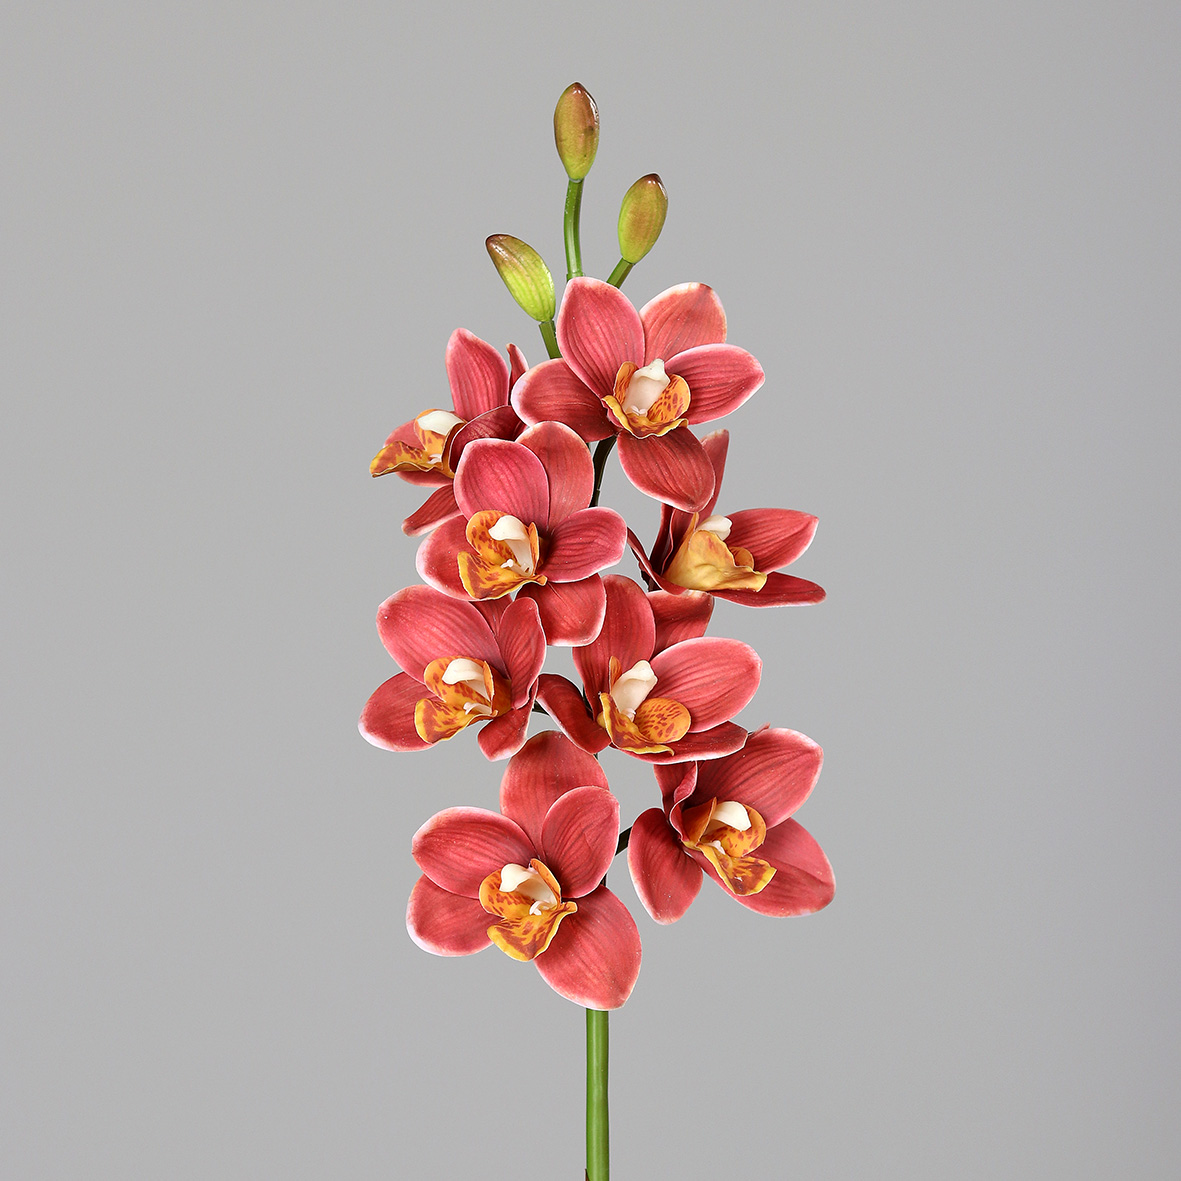 Orchidee Cymbidie Real Touch 80cm orange-rot DP Kunstlbumen künstliche Orchideenzweig Blumen